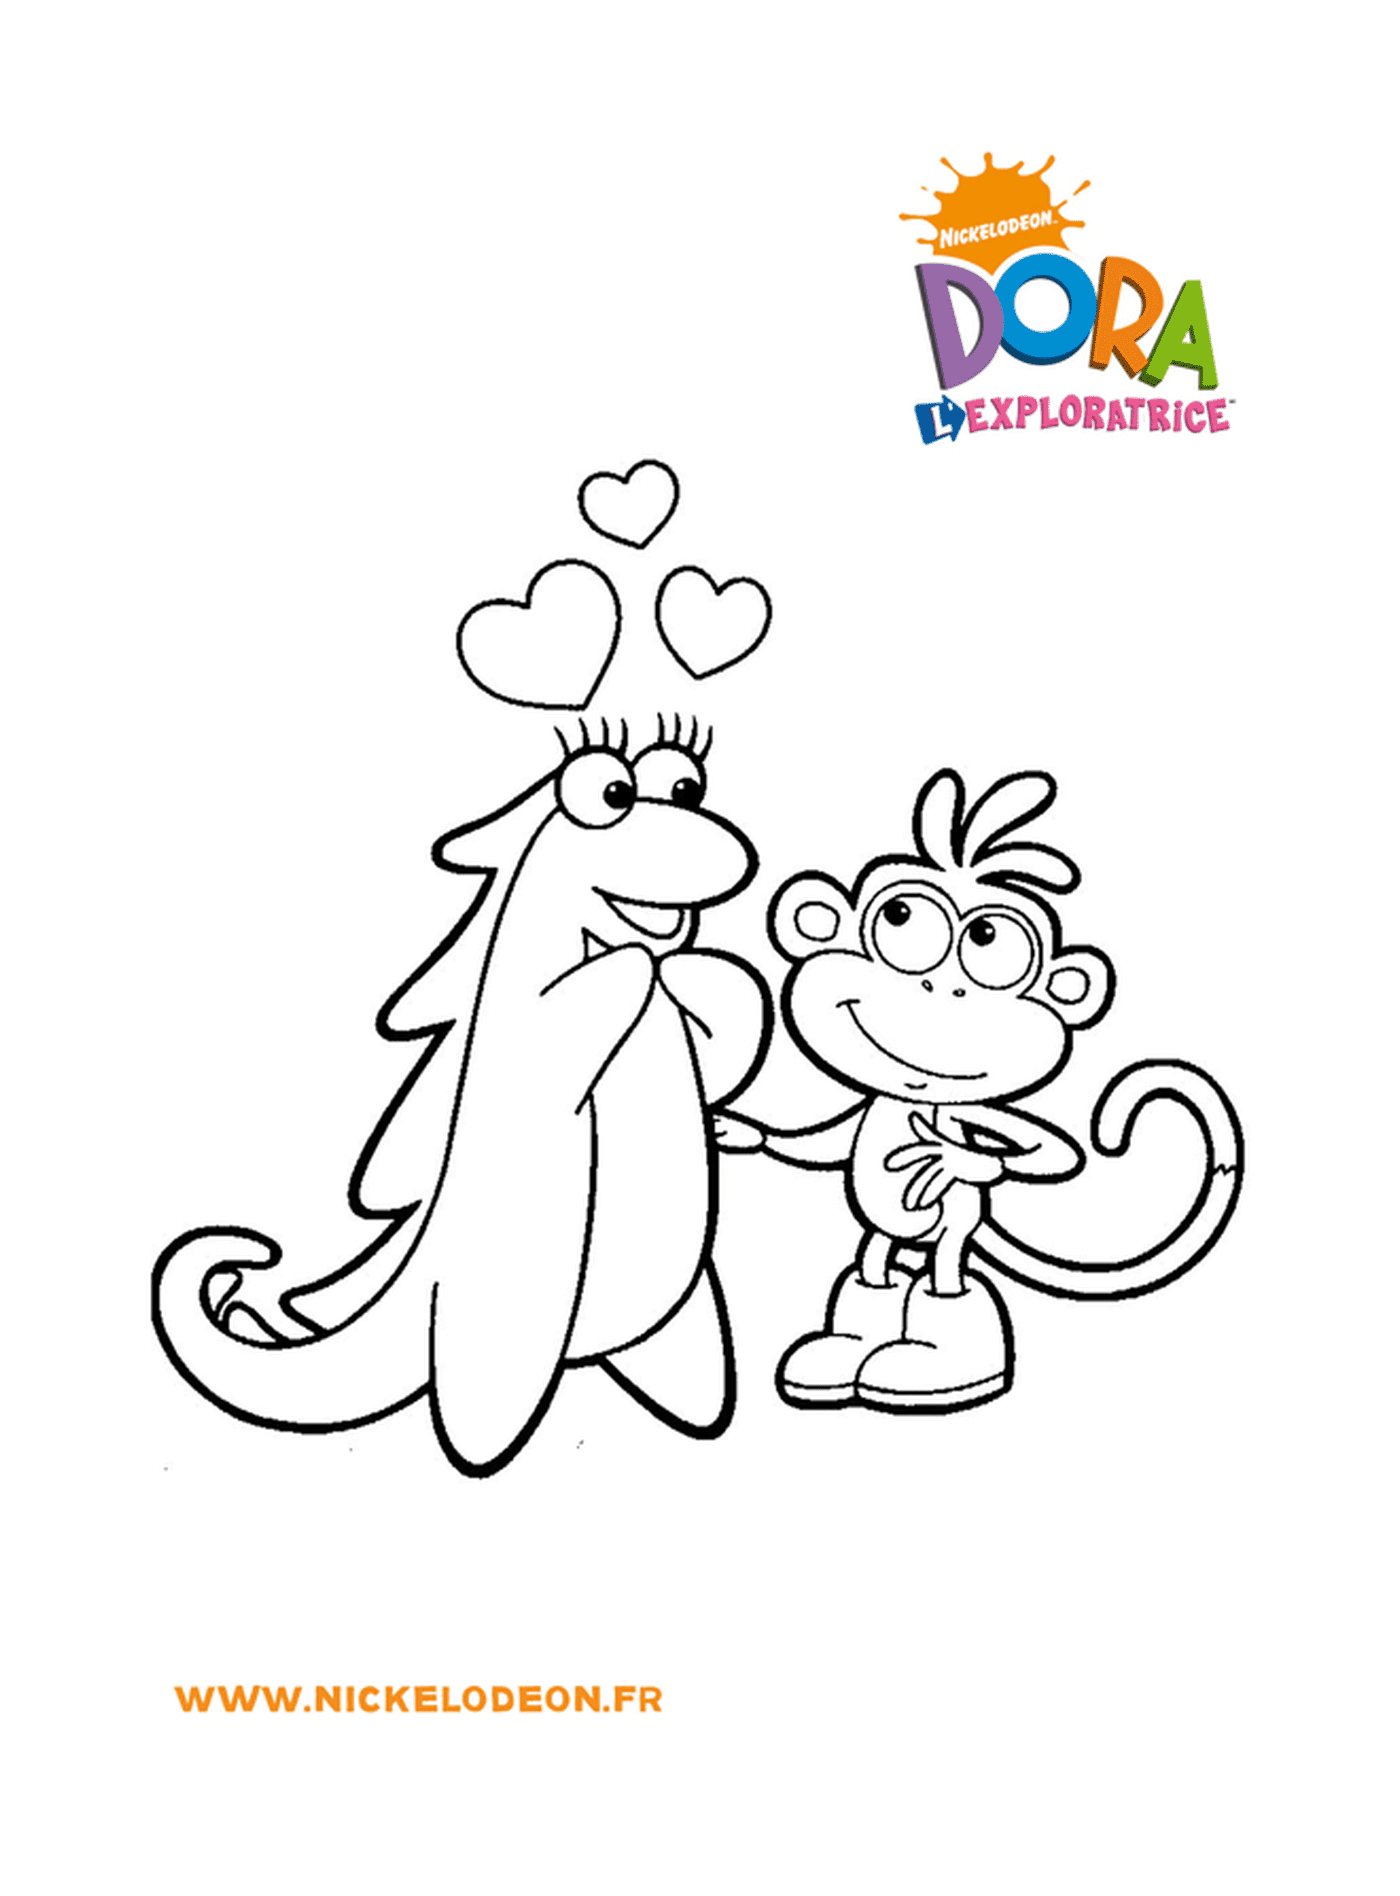  Dora e Babouche scoprono l'amore nel cuore delle loro avventure 